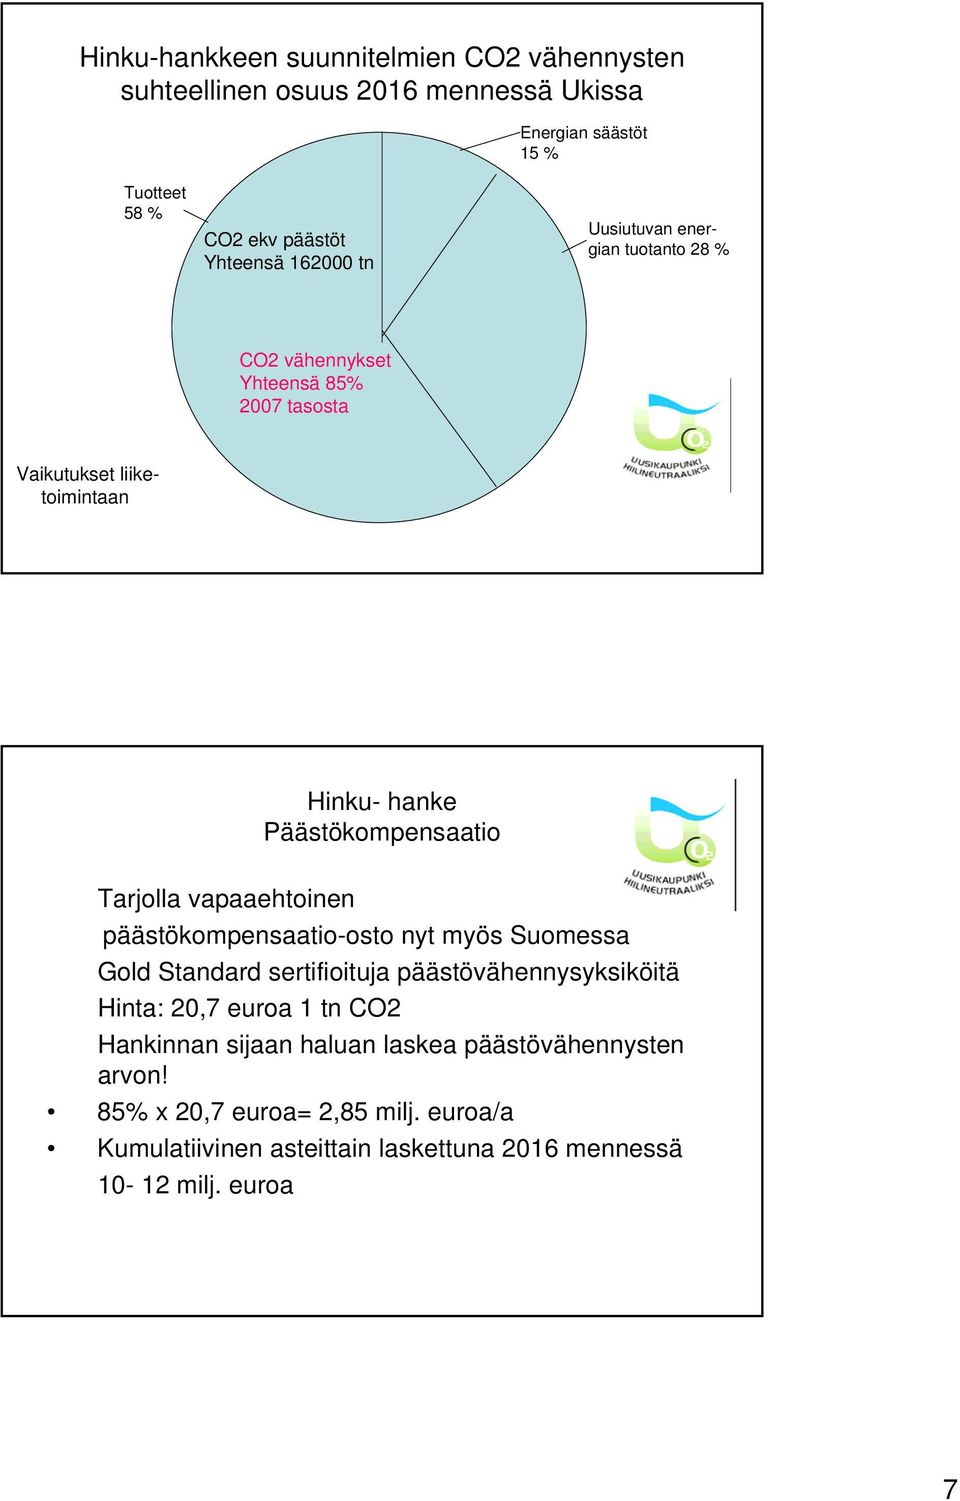 Tarjolla vapaaehtoinen päästökompensaatio-osto nyt myös Suomessa Gold Standard sertifioituja päästövähennysyksiköitä Hinta: 20,7 euroa 1 tn CO2